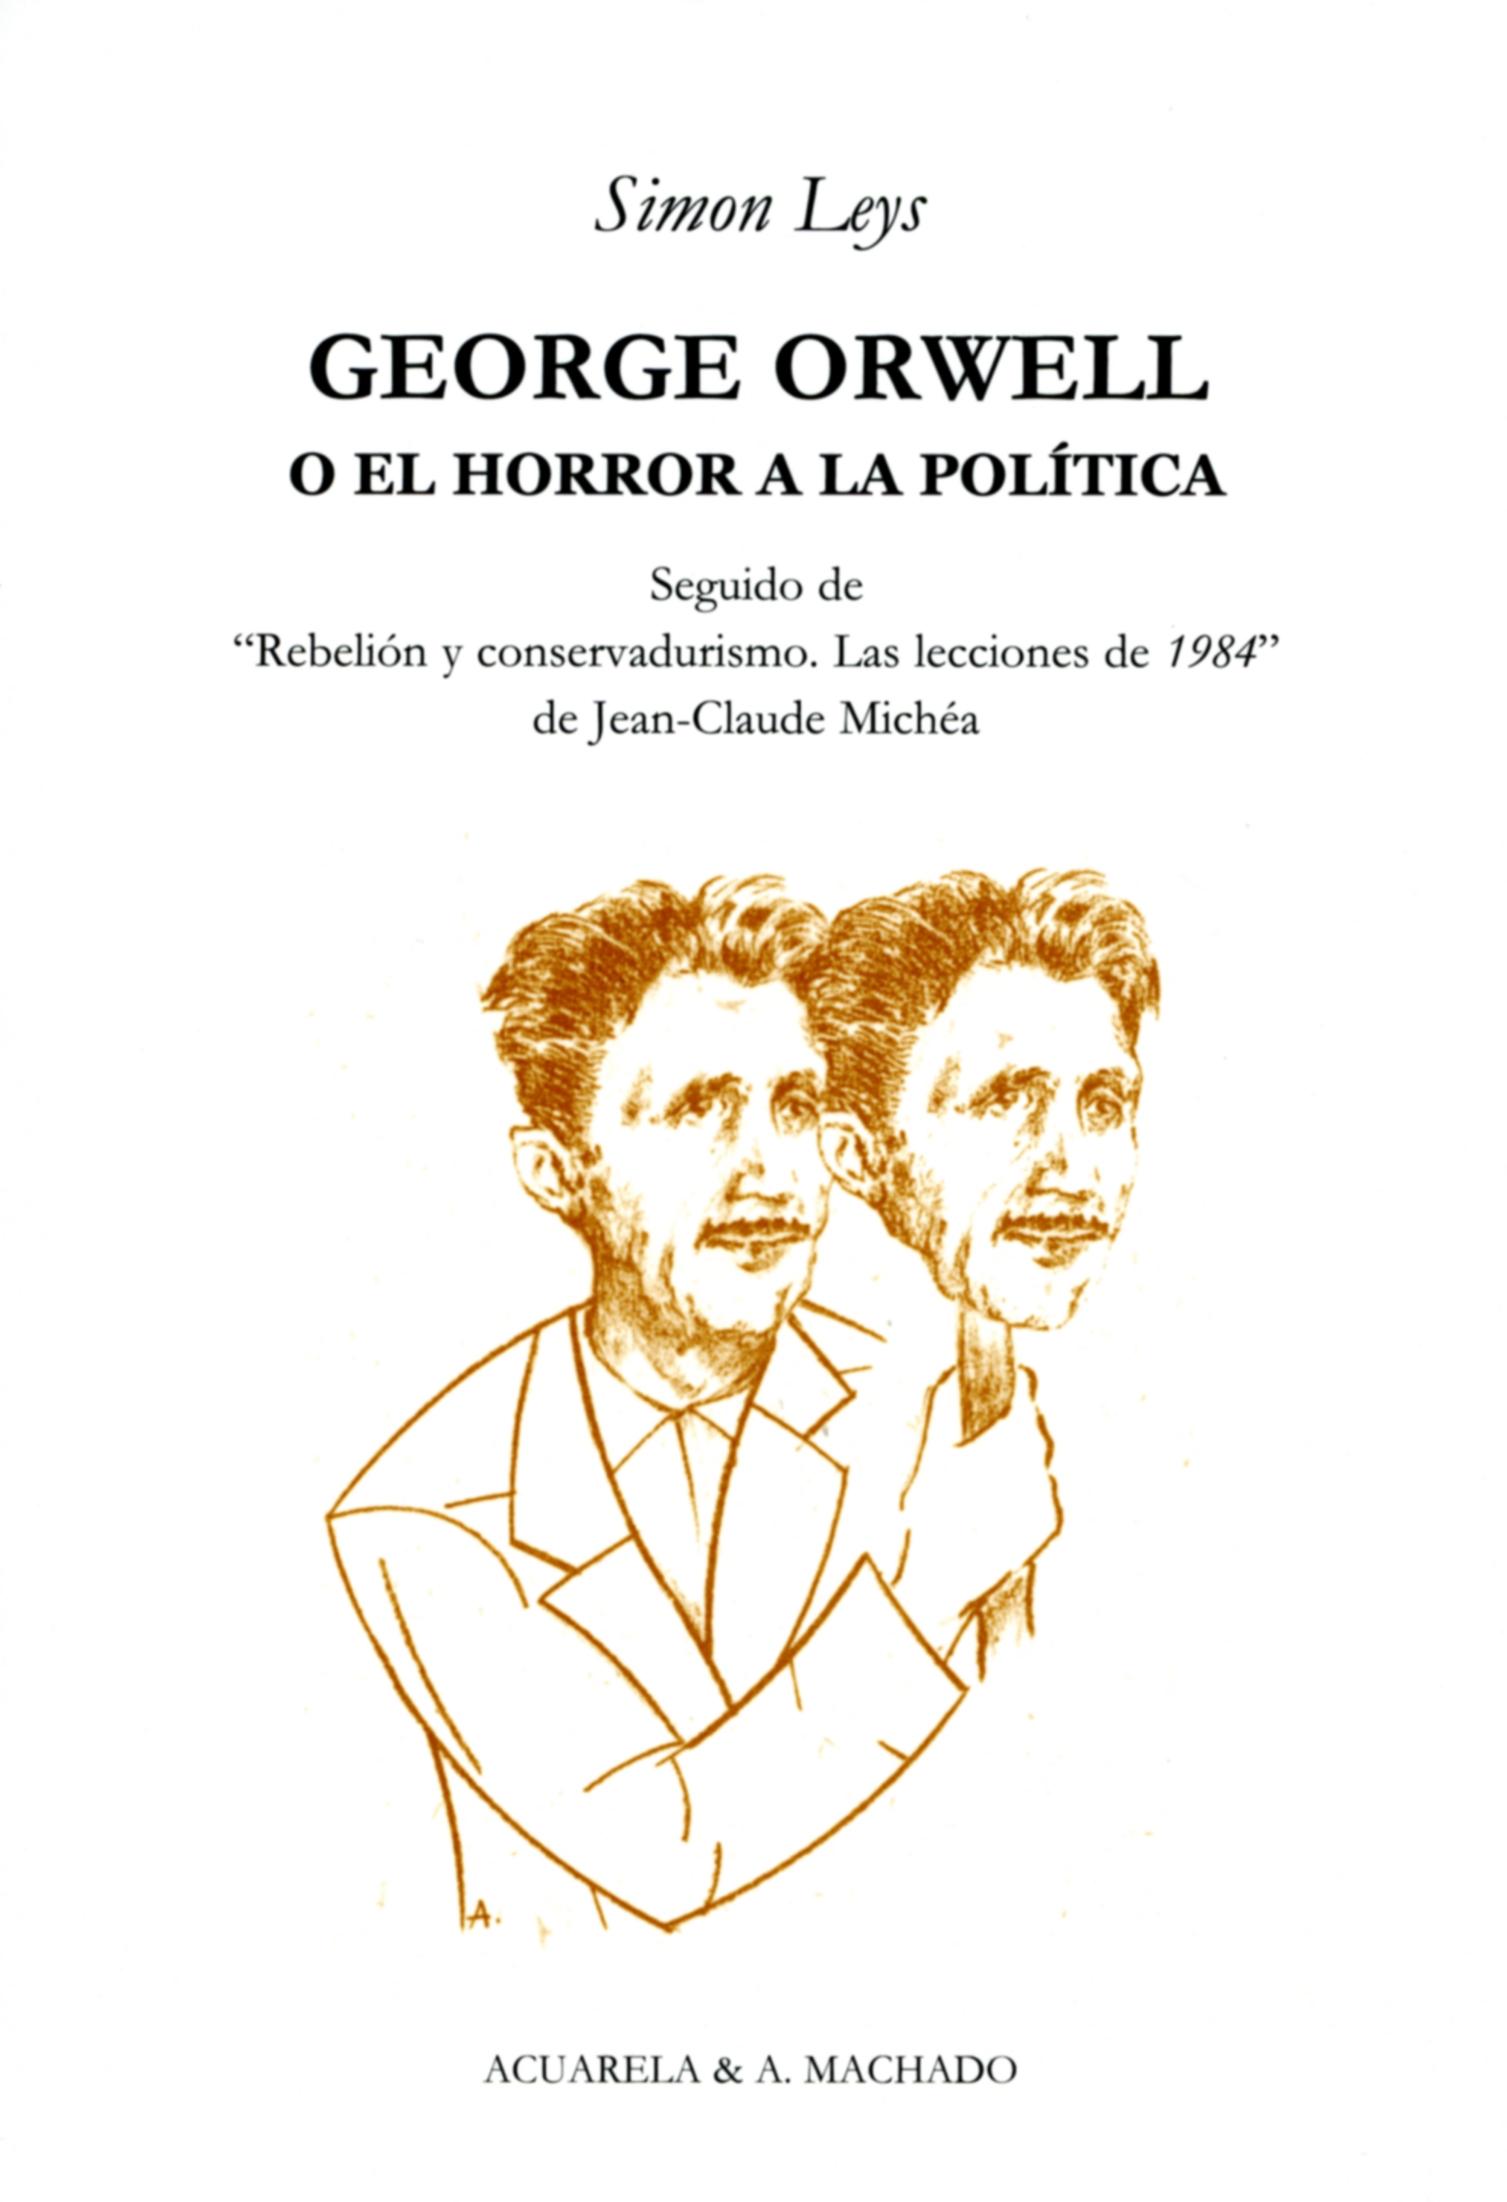 George Orwell "O el Horror a la Política"